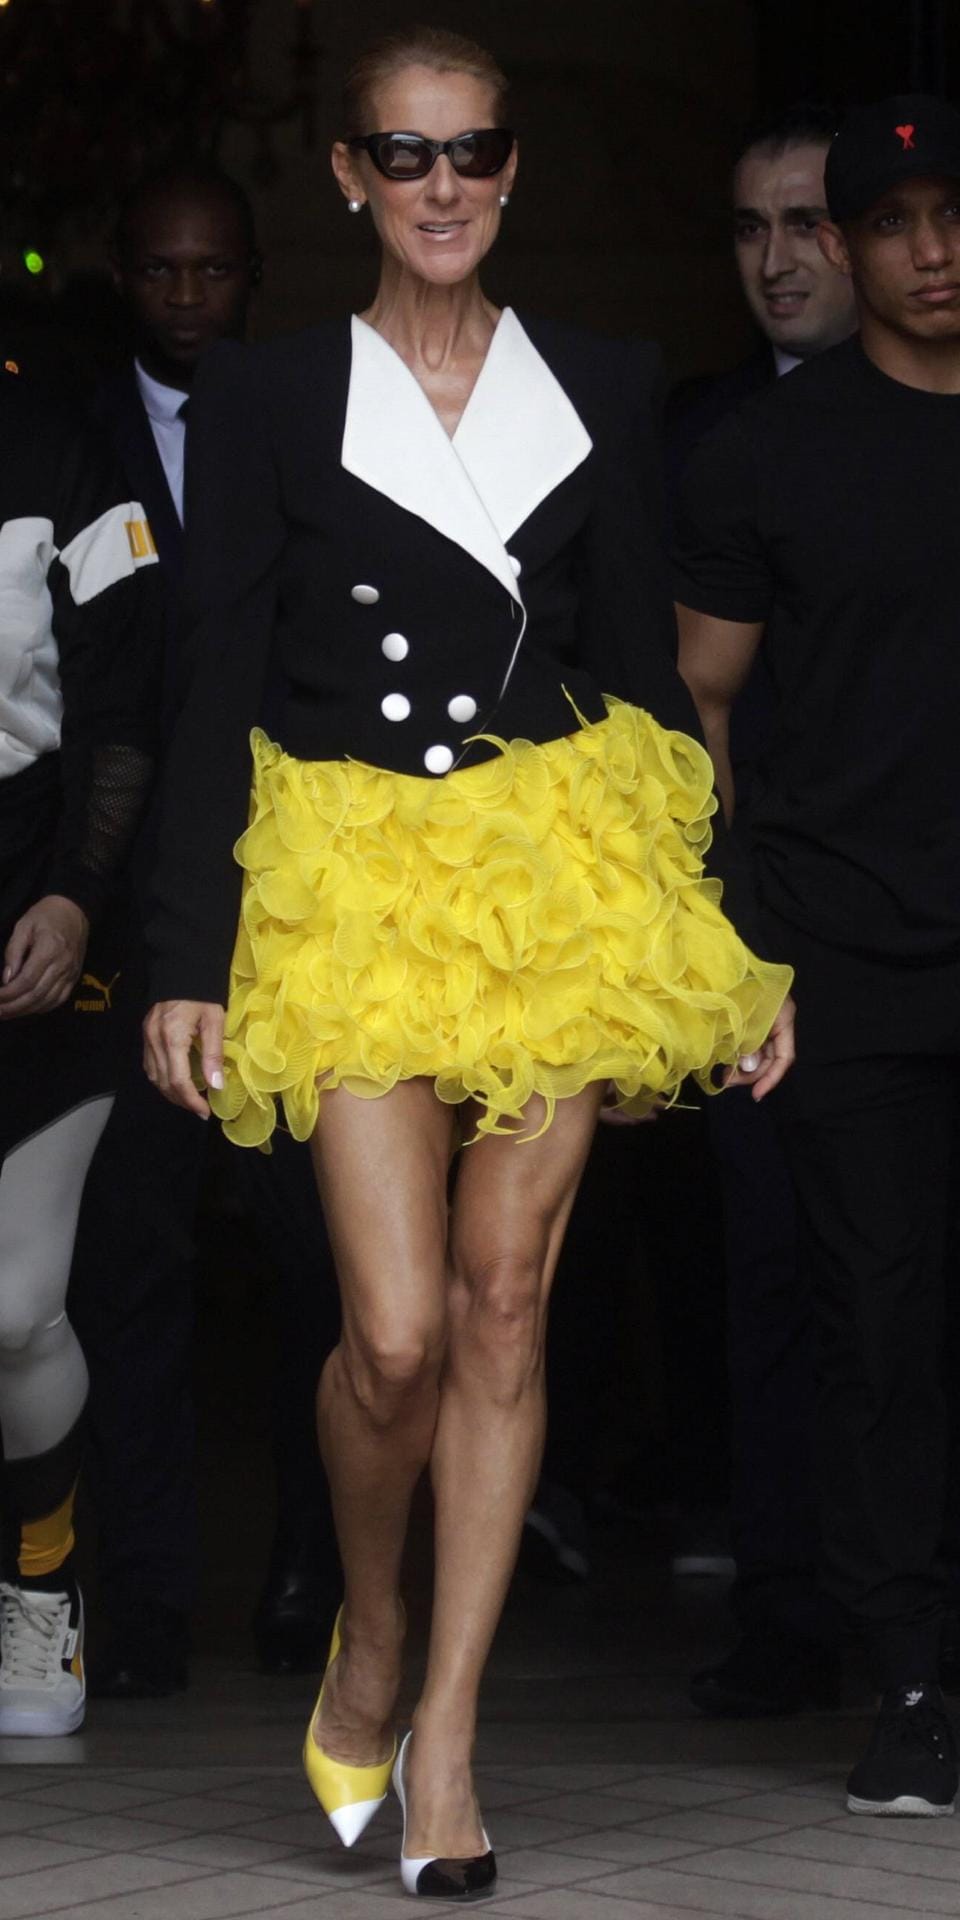 Der Tweety-Gedächtnis-Look: Mit dem gelben Tüllrock erinnerte Céline Dion an den animierten gelben Kanarienvogel.